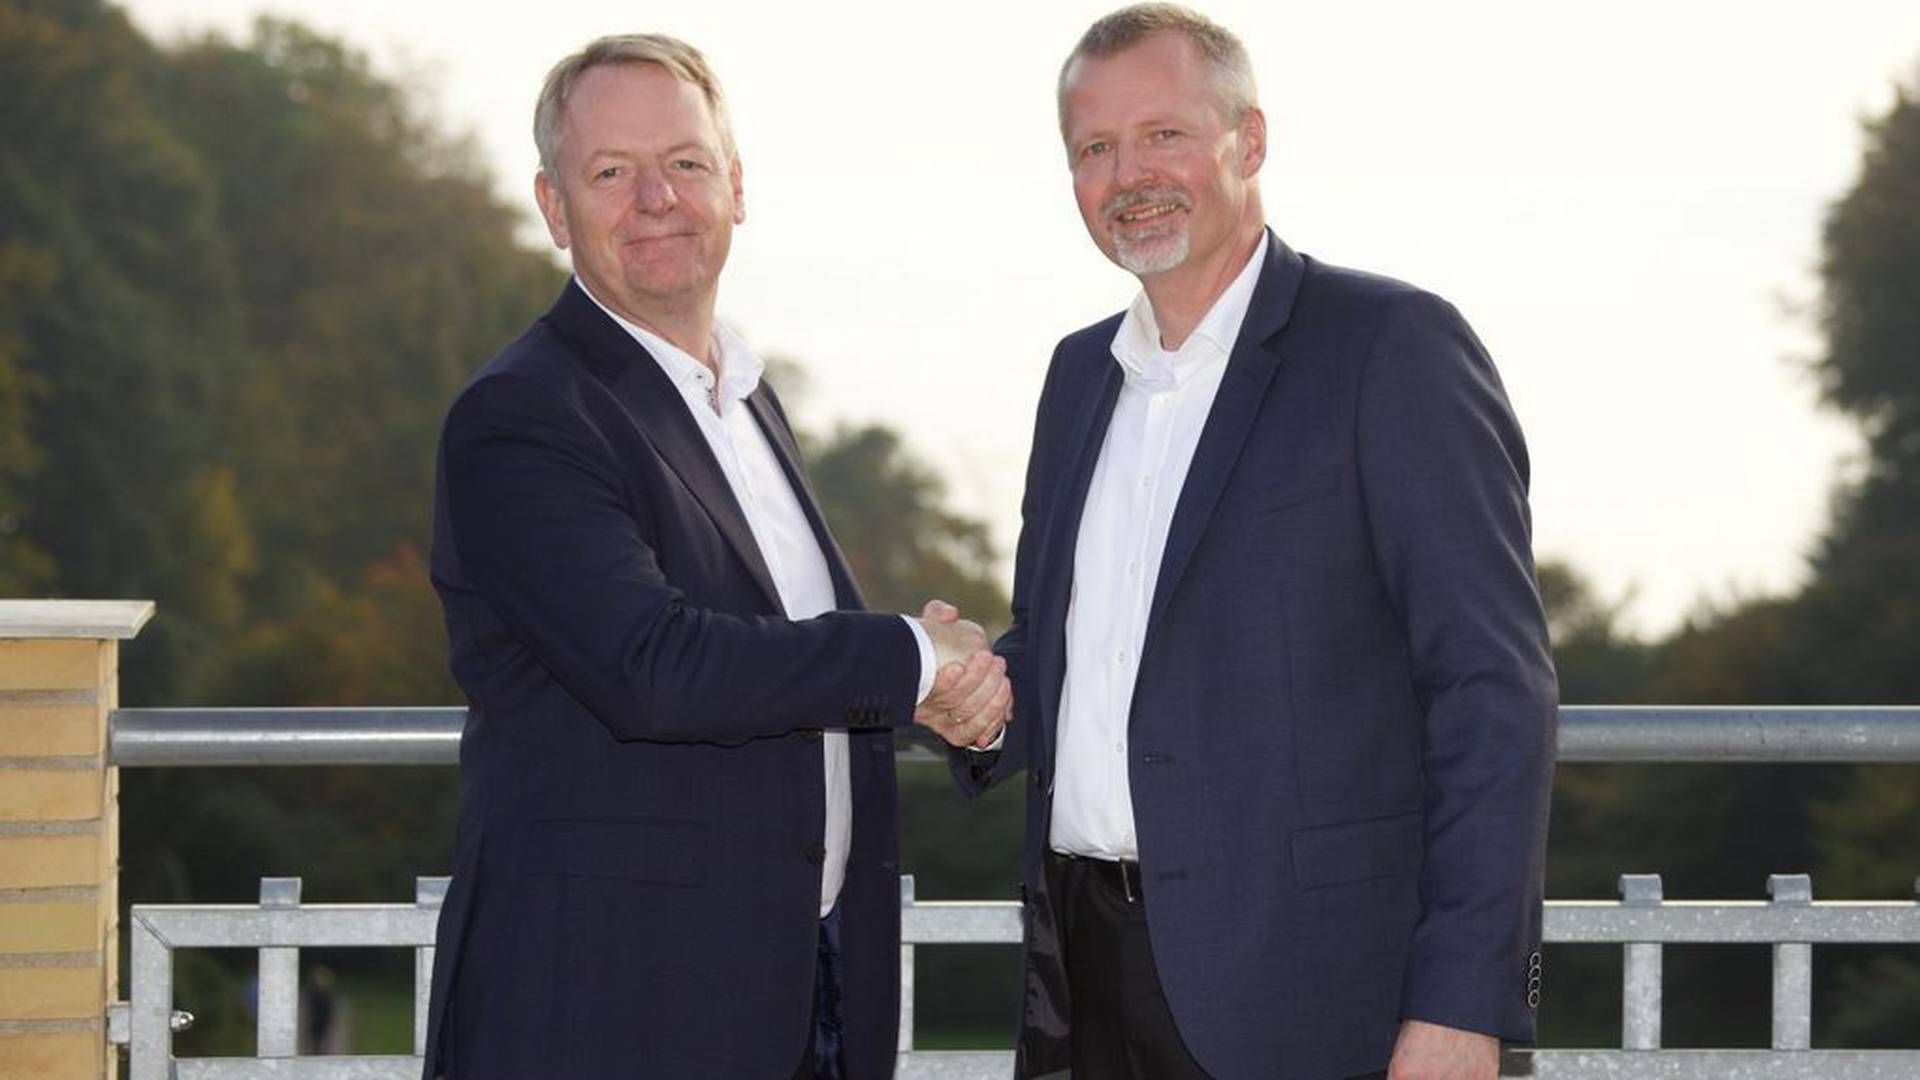 Niels Duedahl og Martin Romvig, adm. direktør for hhv. SE og Eniig. | Foto: PR